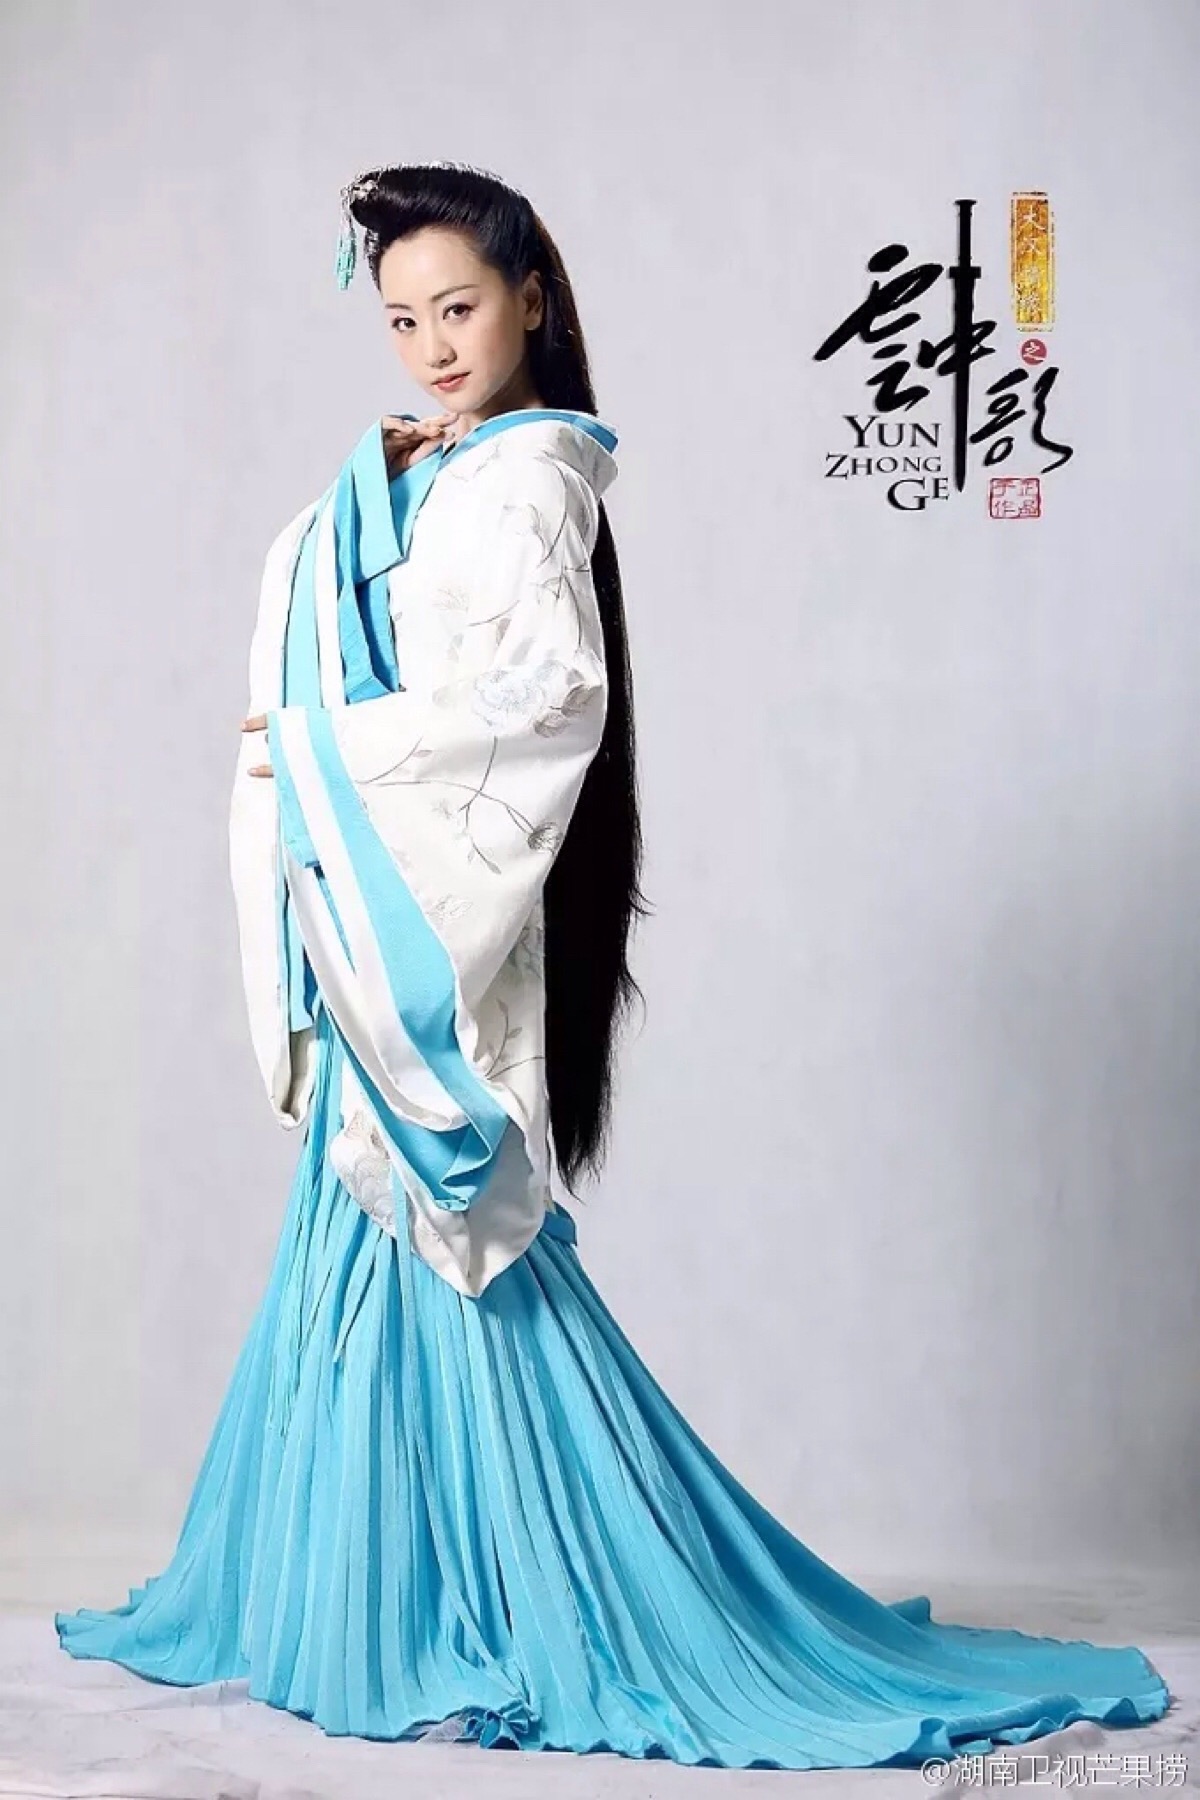 大汉情缘之云中歌 杨蓉 饰 霍成君 - 堆糖，美图壁纸兴趣社区